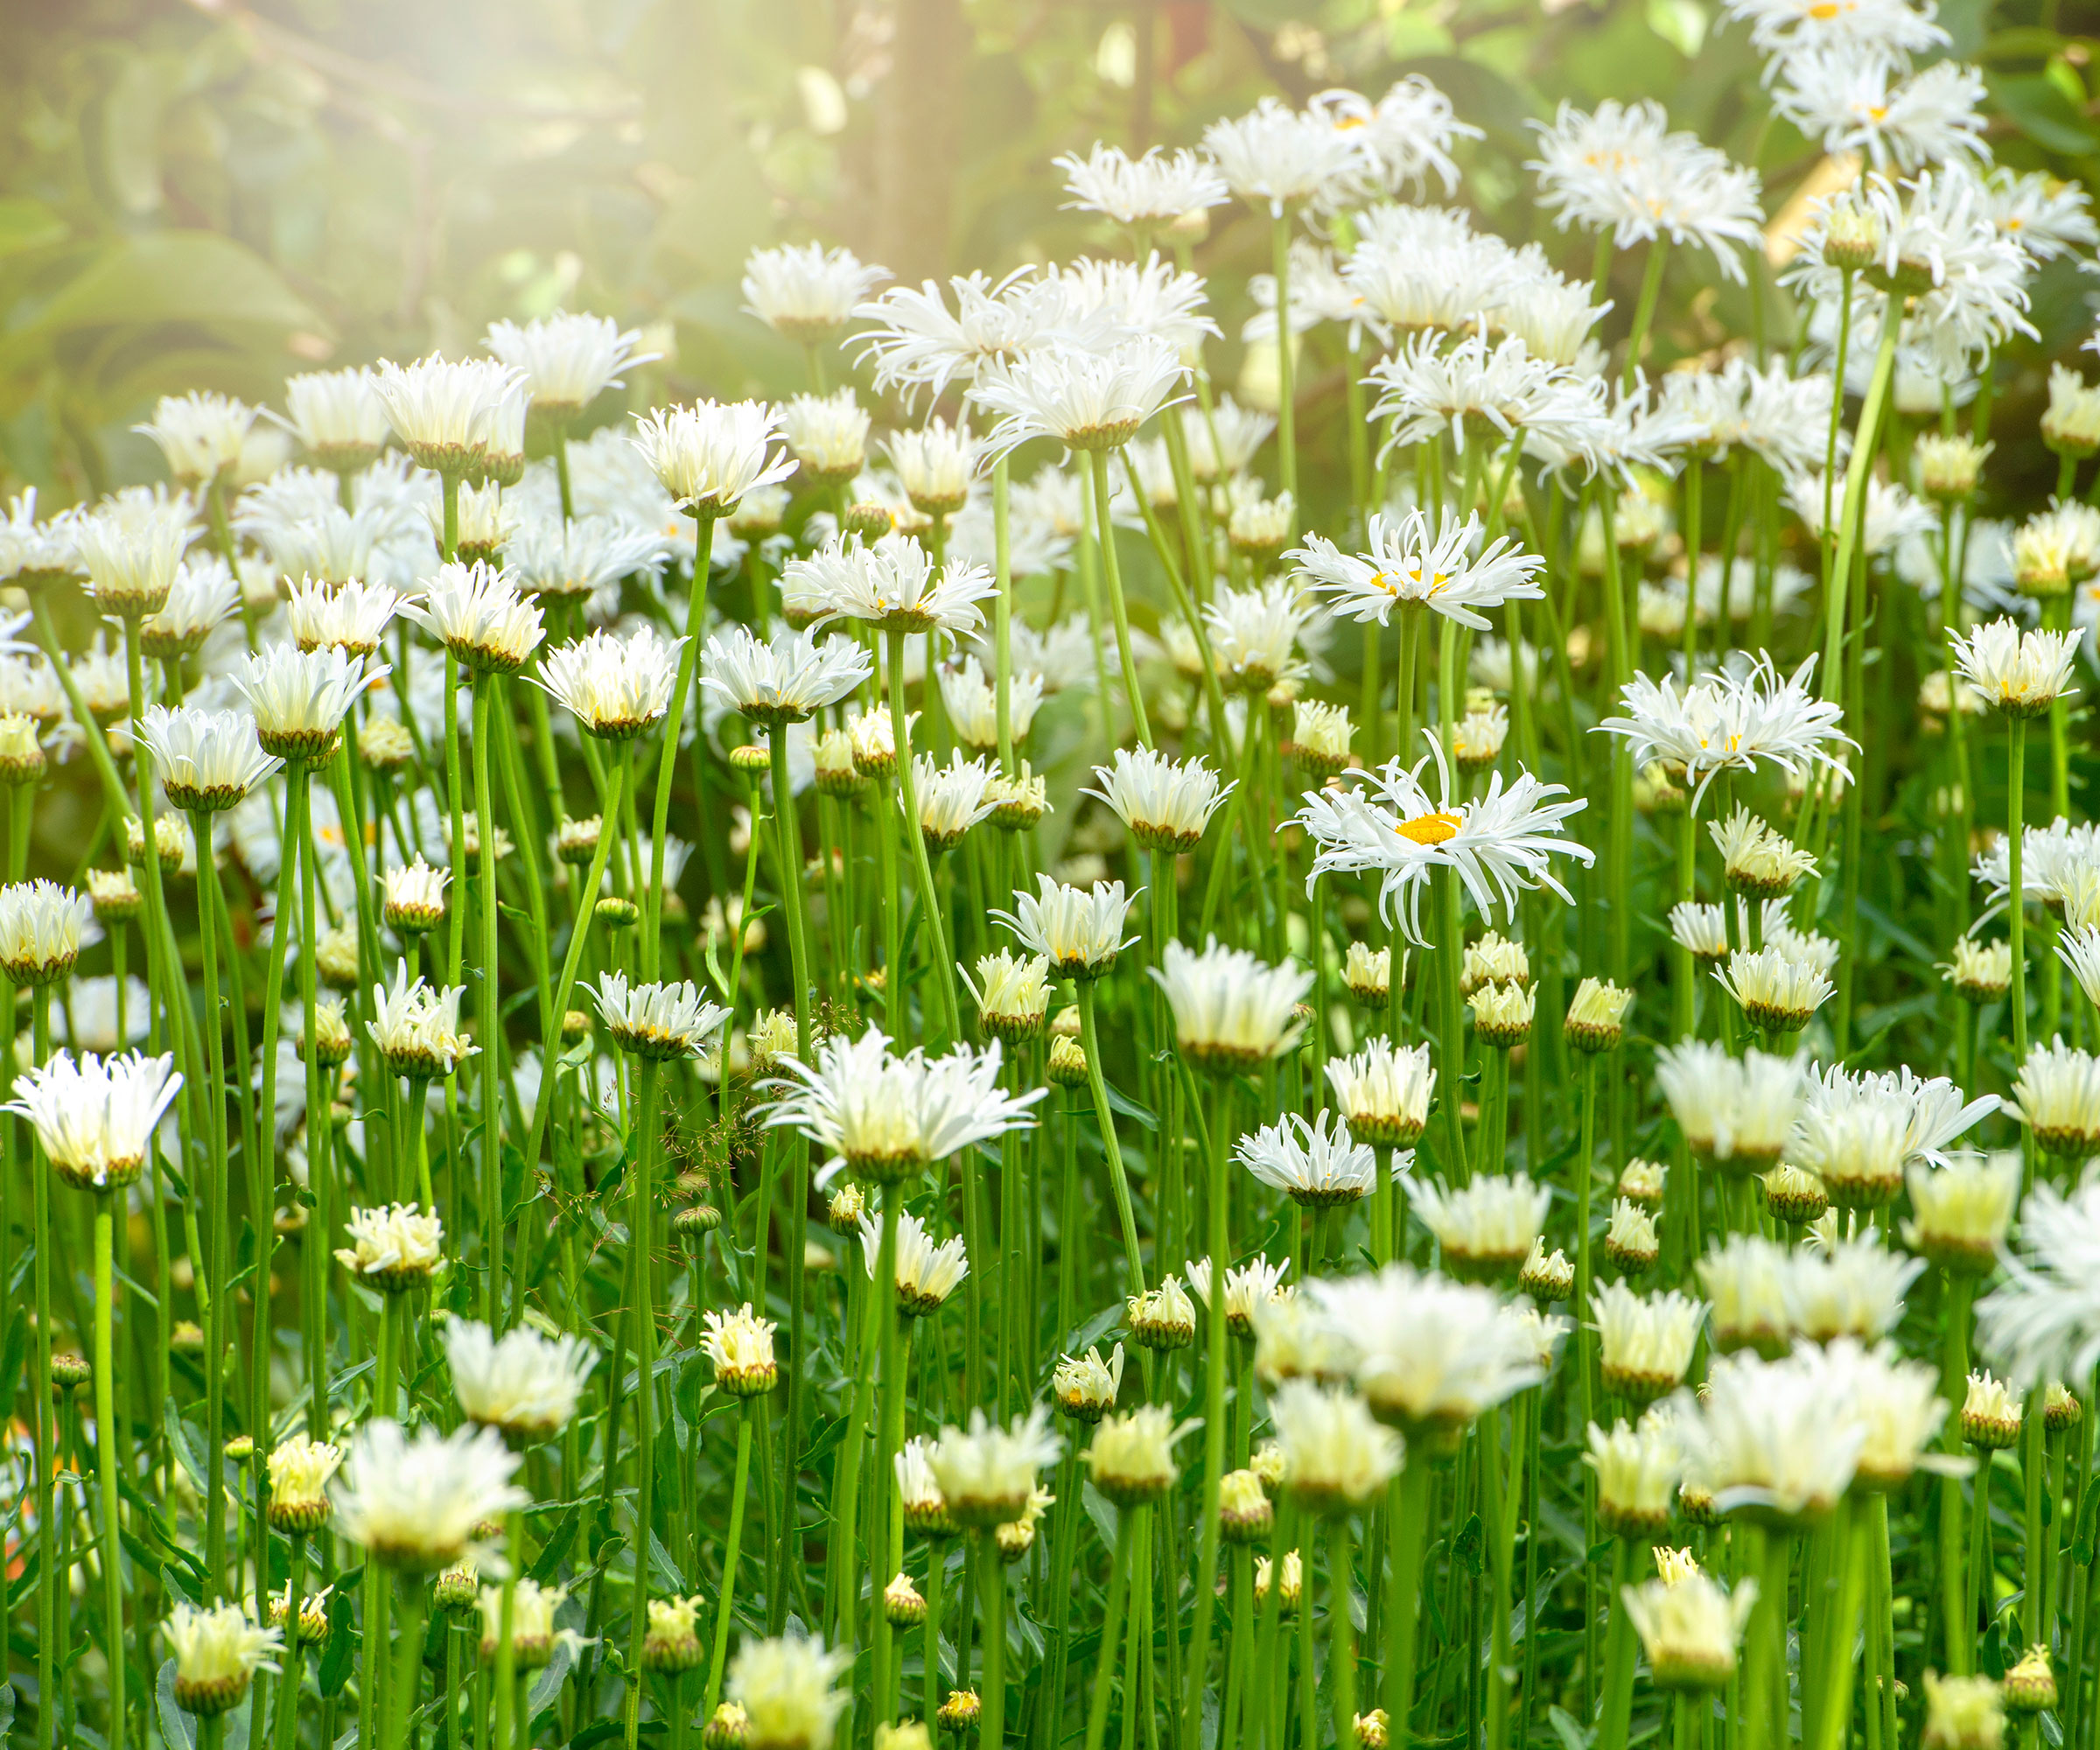 Shasta daisies in meadow garden